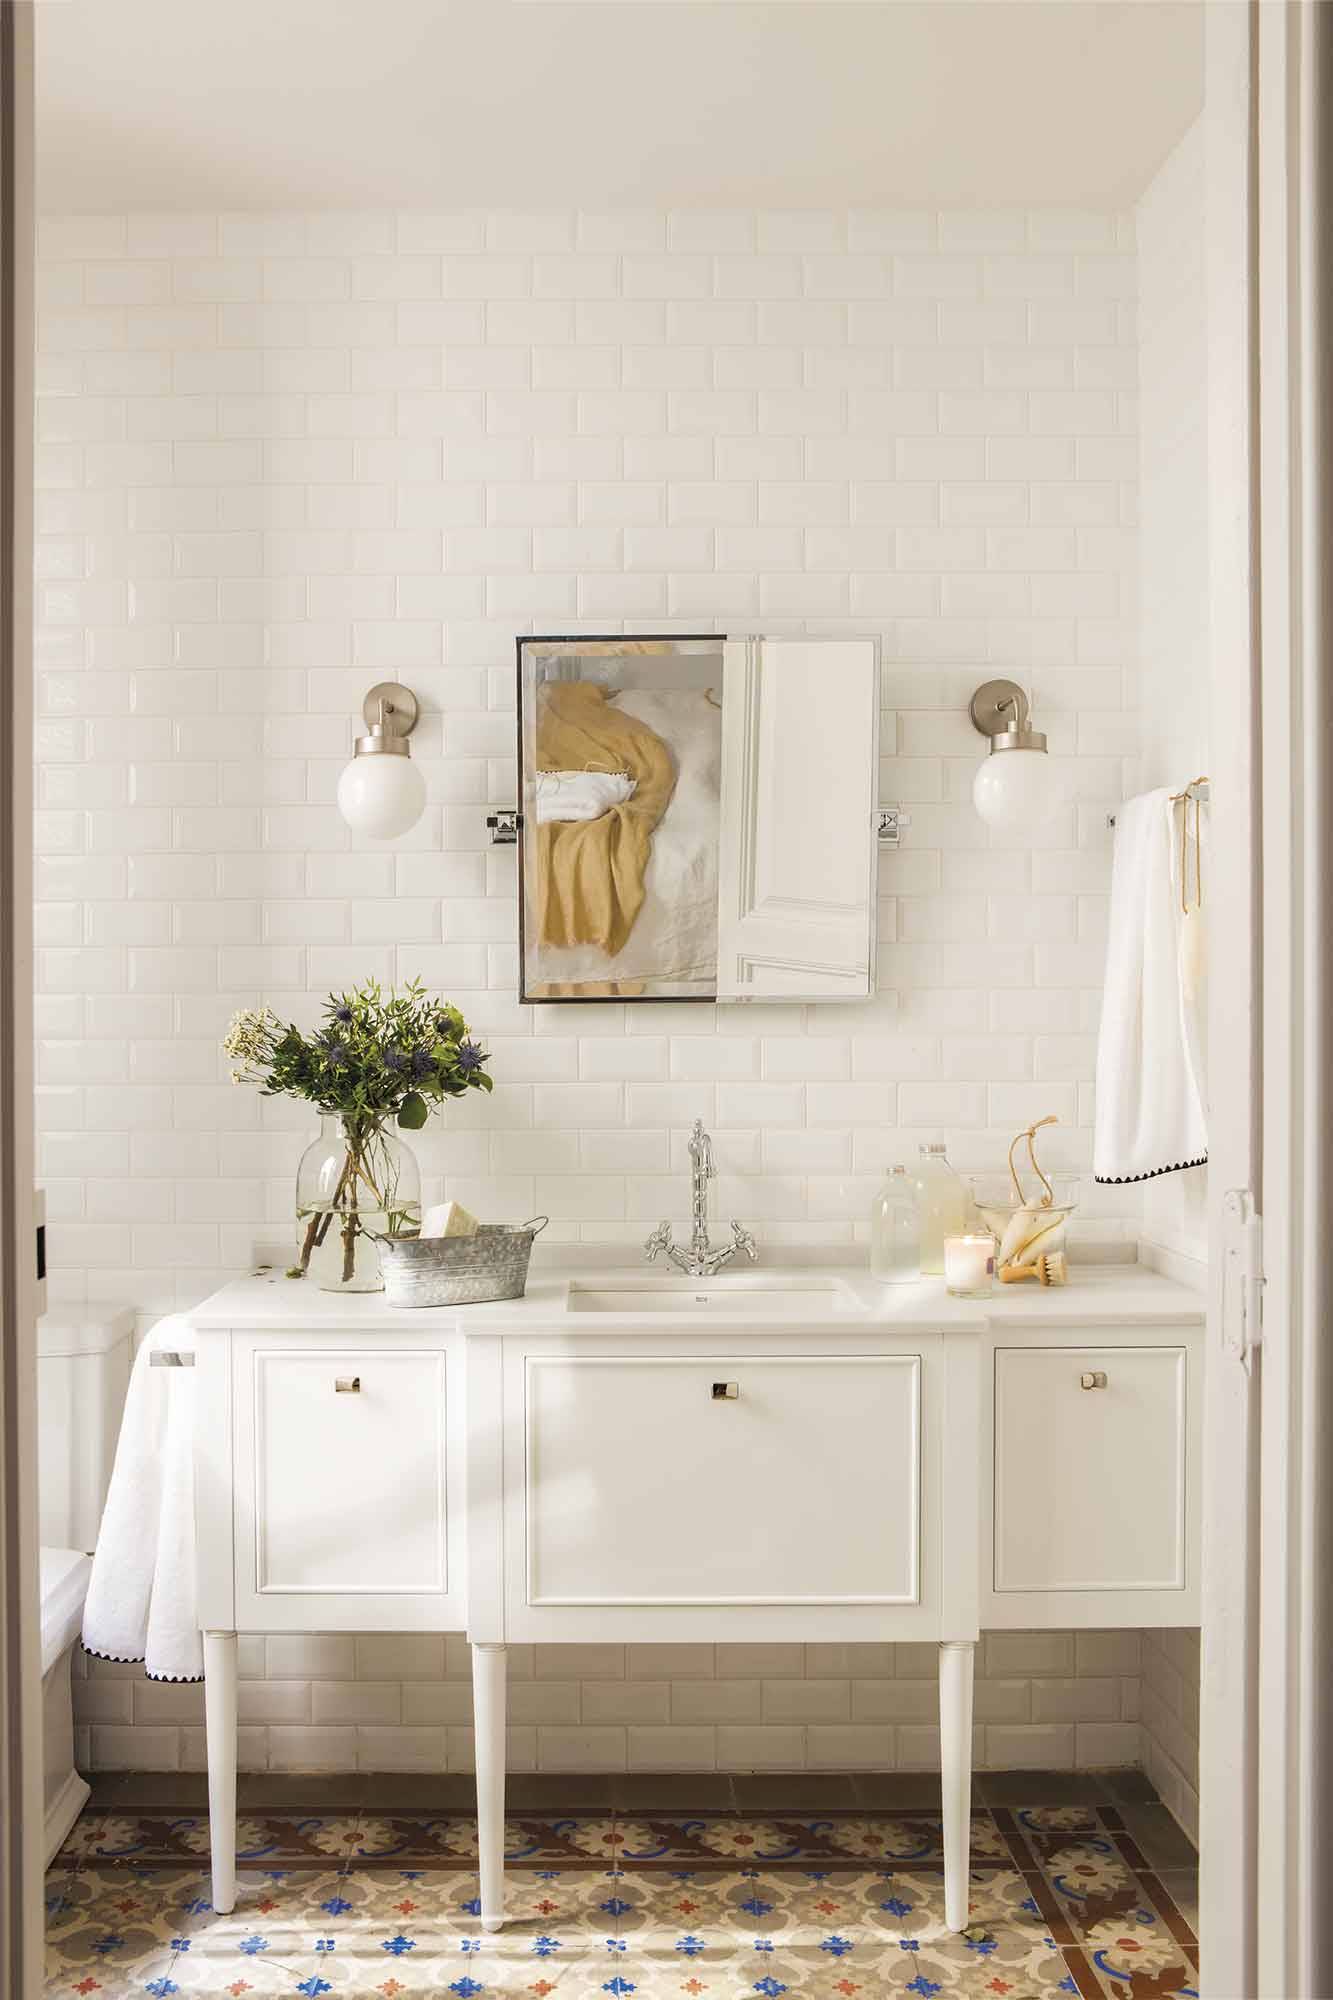 Baño clásico con azulejo blanco tipo metro y mueble con patas. 